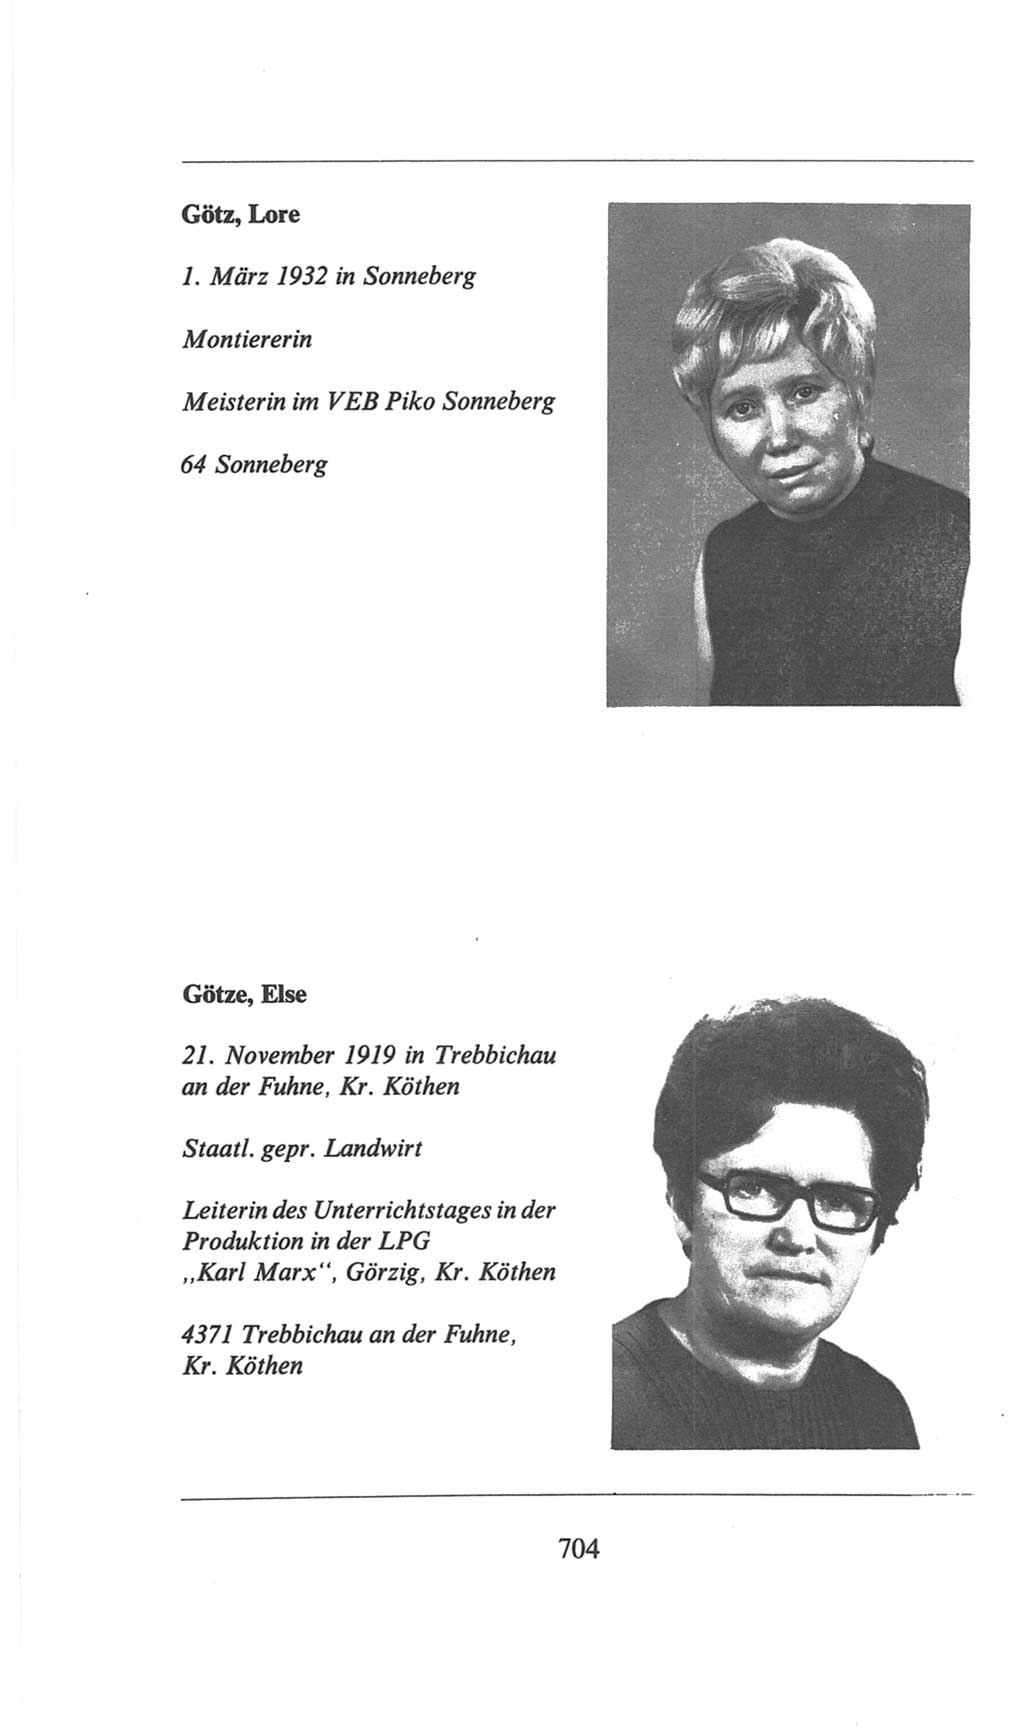 Volkskammer (VK) der Deutschen Demokratischen Republik (DDR), 6. Wahlperiode 1971-1976, Seite 704 (VK. DDR 6. WP. 1971-1976, S. 704)